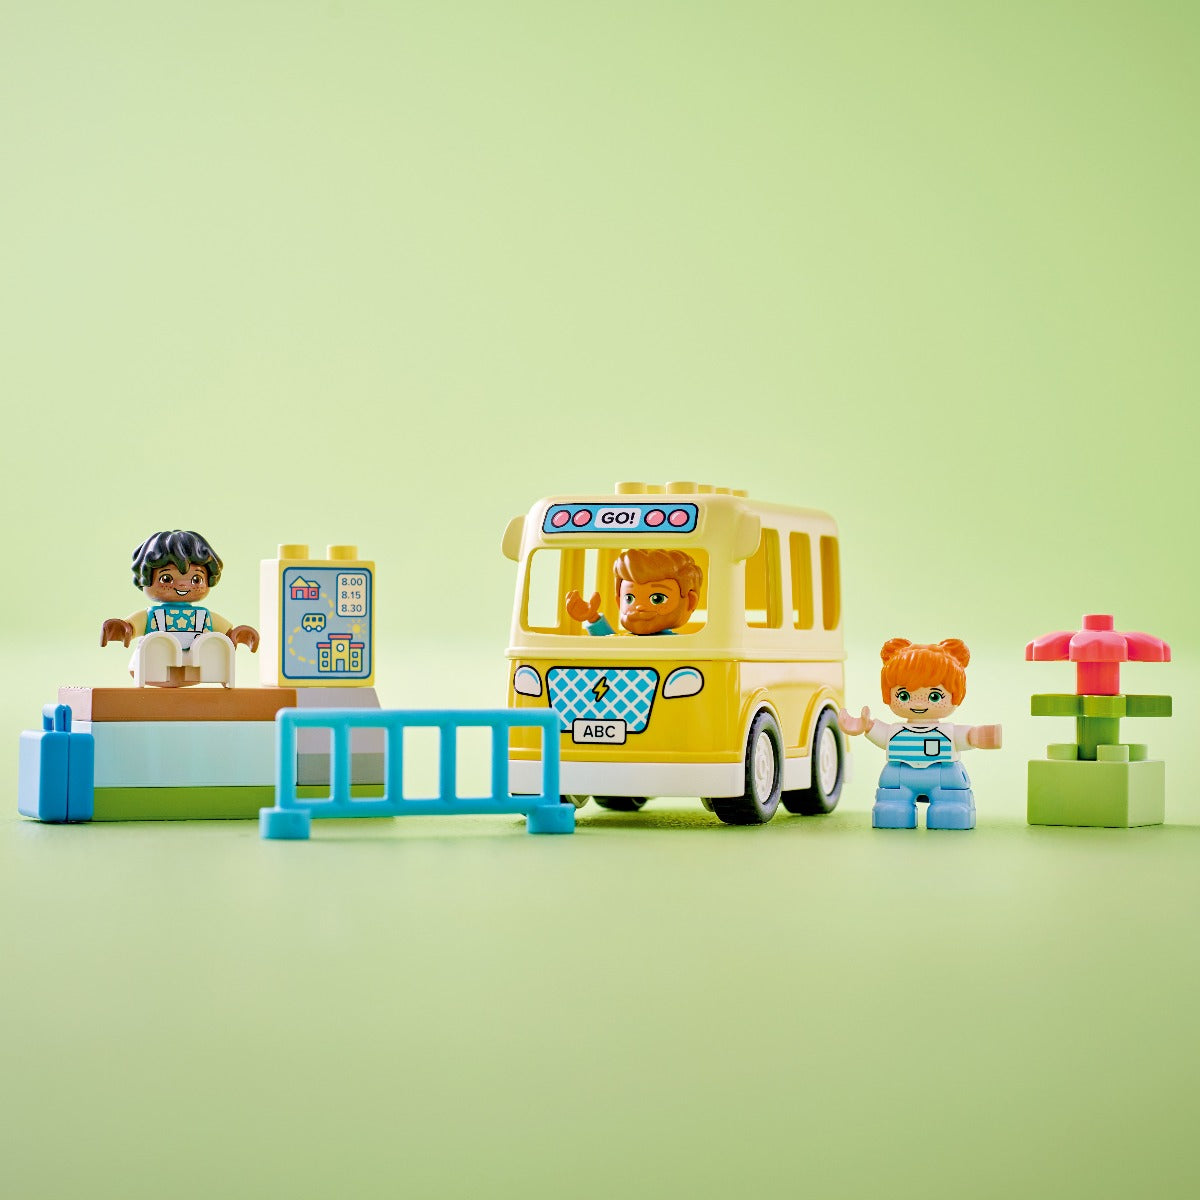 Đồ chơi lắp ráp Xe buýt di động LEGO DUPLO 10988